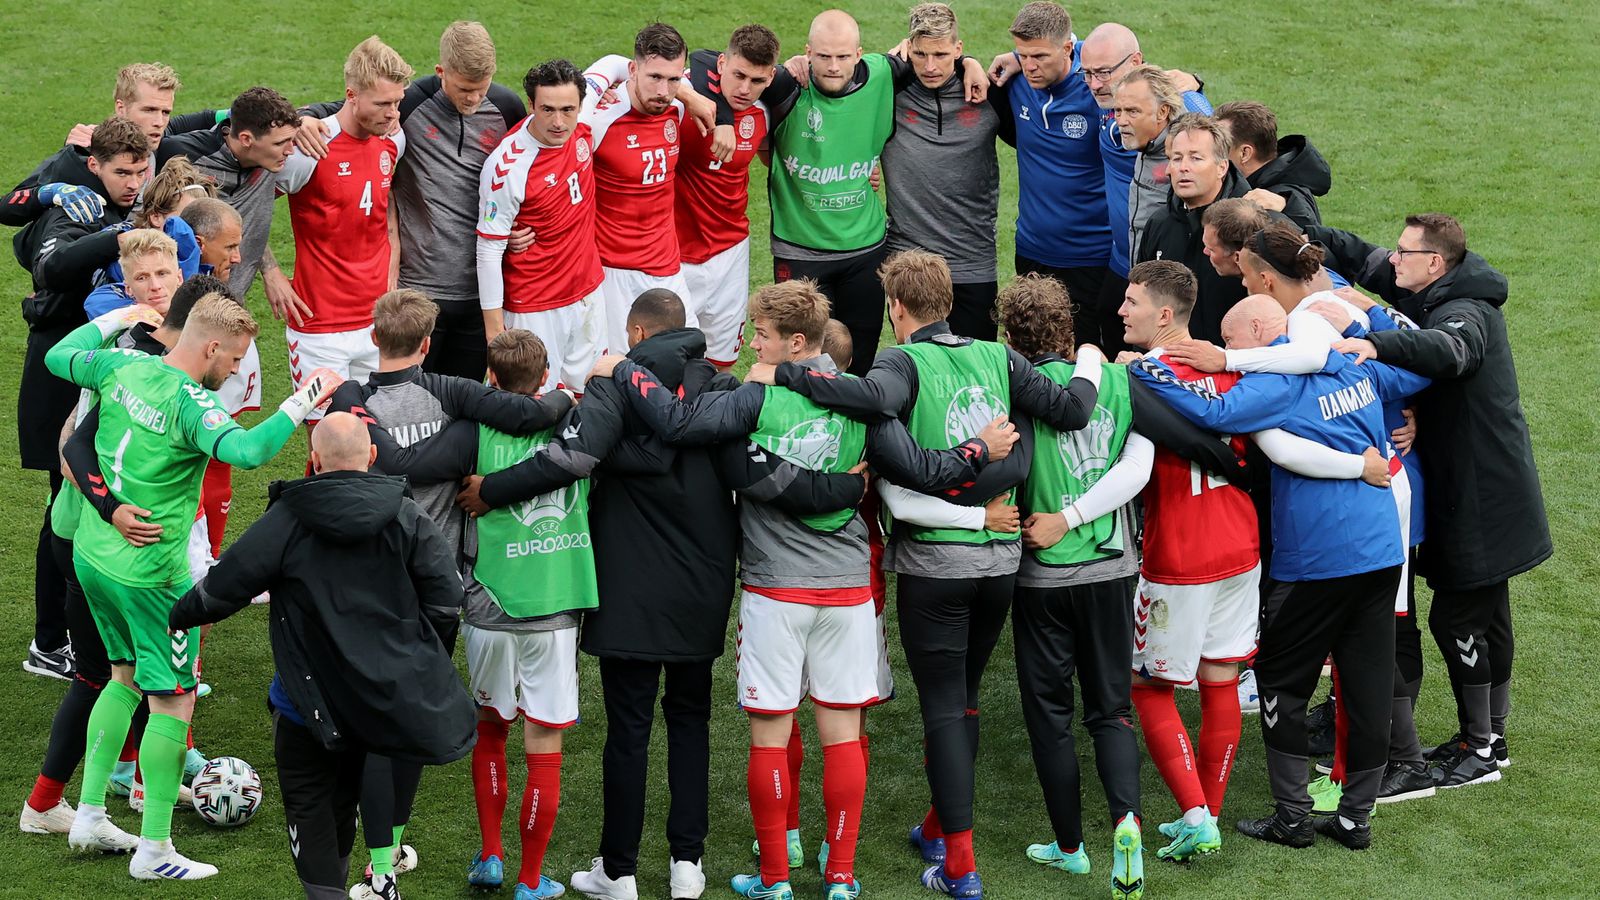 Dänemark 0 - 1 Finland - Match Report & Highlights